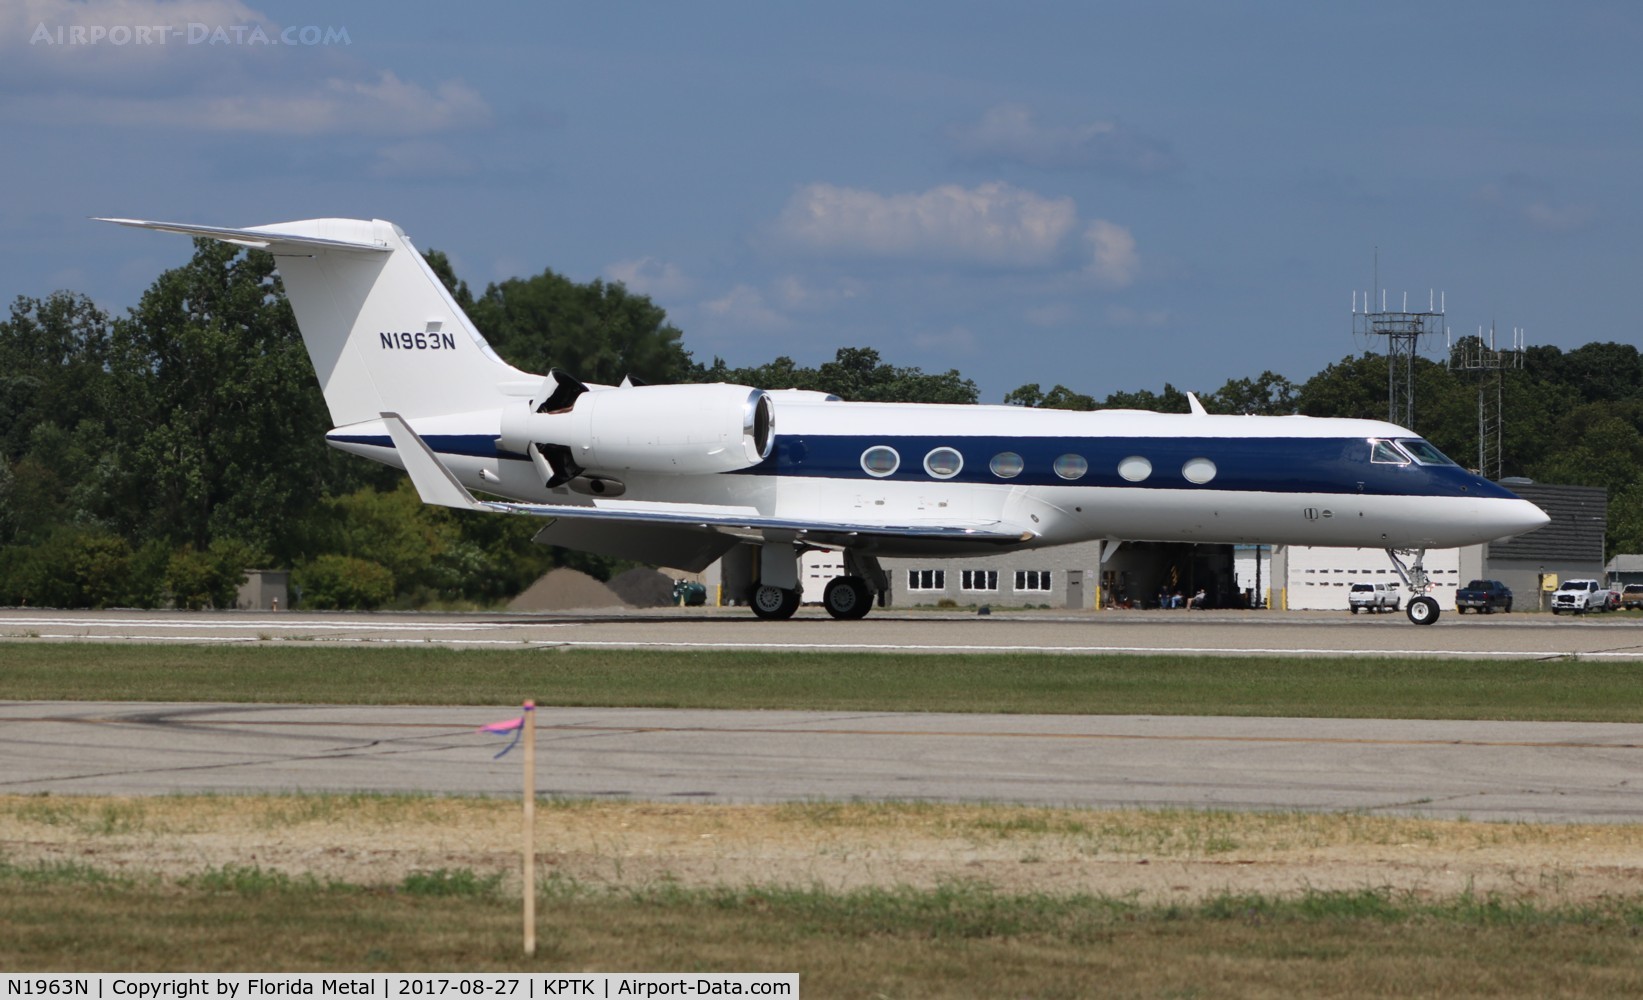 N1963N, 2012 Gulfstream Aerospace GIV-X (G450) C/N 4268, Gulfstream G450